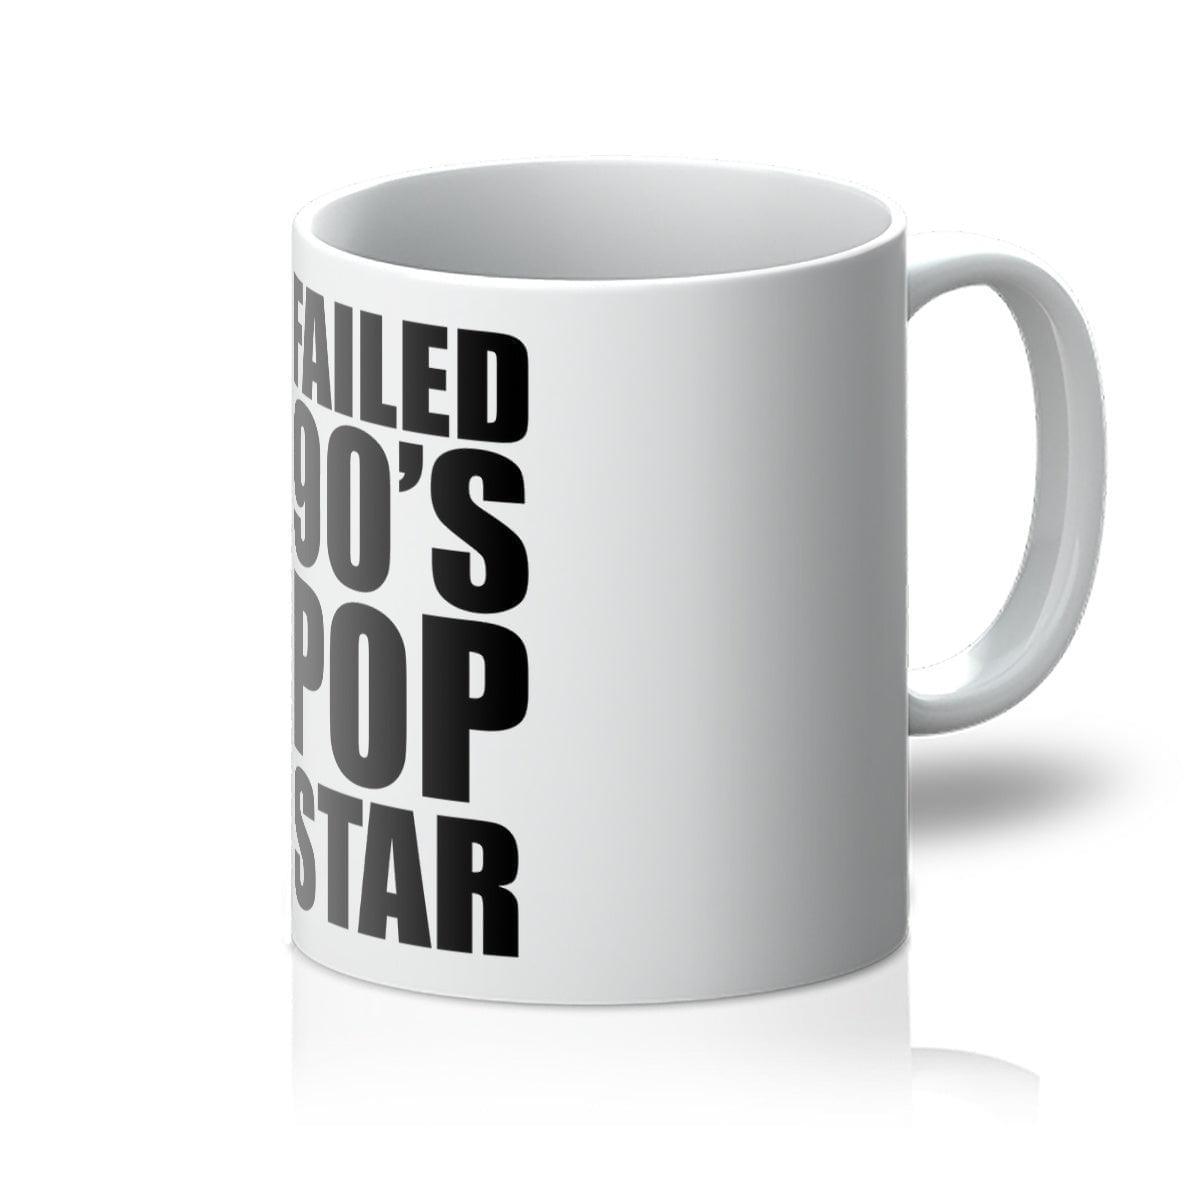 Failed 90's Pop Star Mug